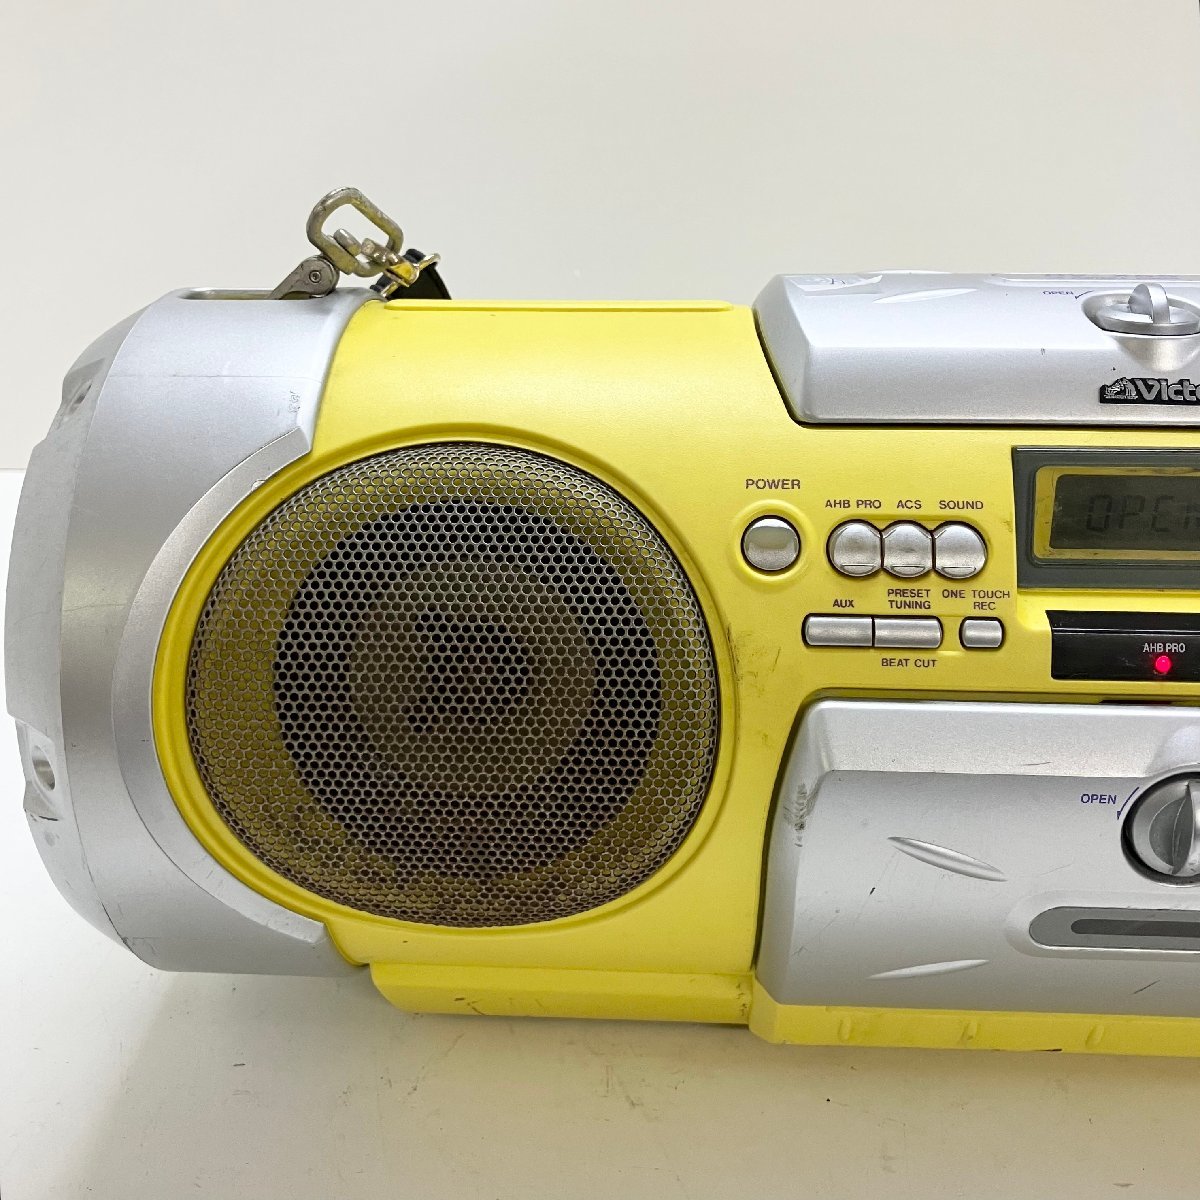 ◆【ジャンク品】Victor ビクター RV-X55-Y ドラム缶型 FM/AM CD カセット ポータブルシステム 2000年製 黄色 現状品 (E2)N/G60306/4/6_画像3